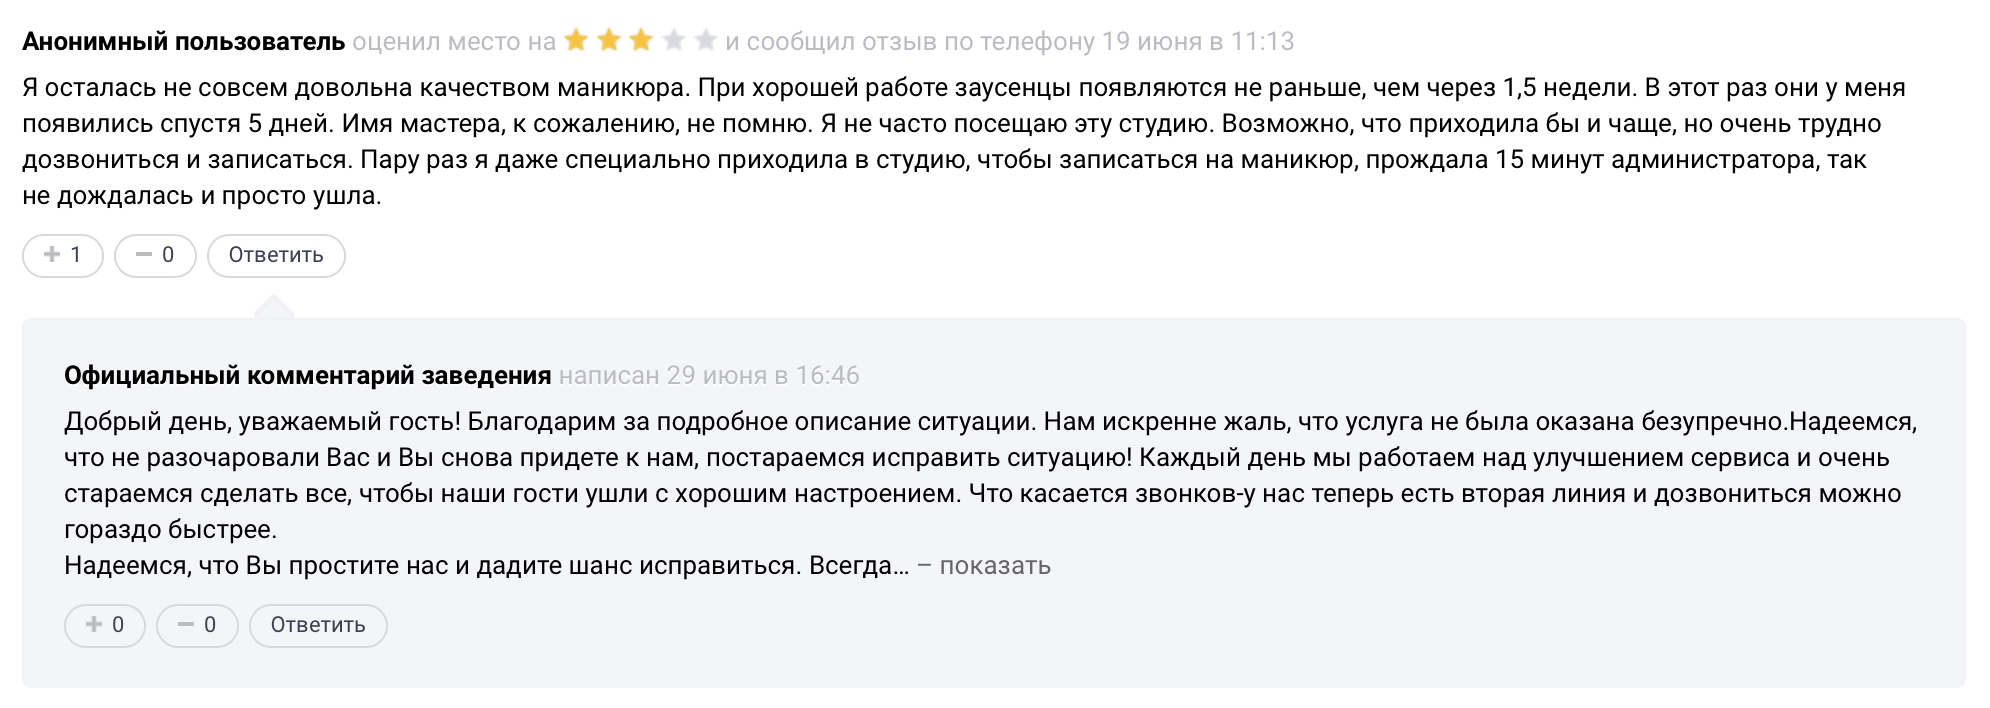 Sravni.ru отзывы - ответы от официального представителя - первый независимый сайт отзывов россии